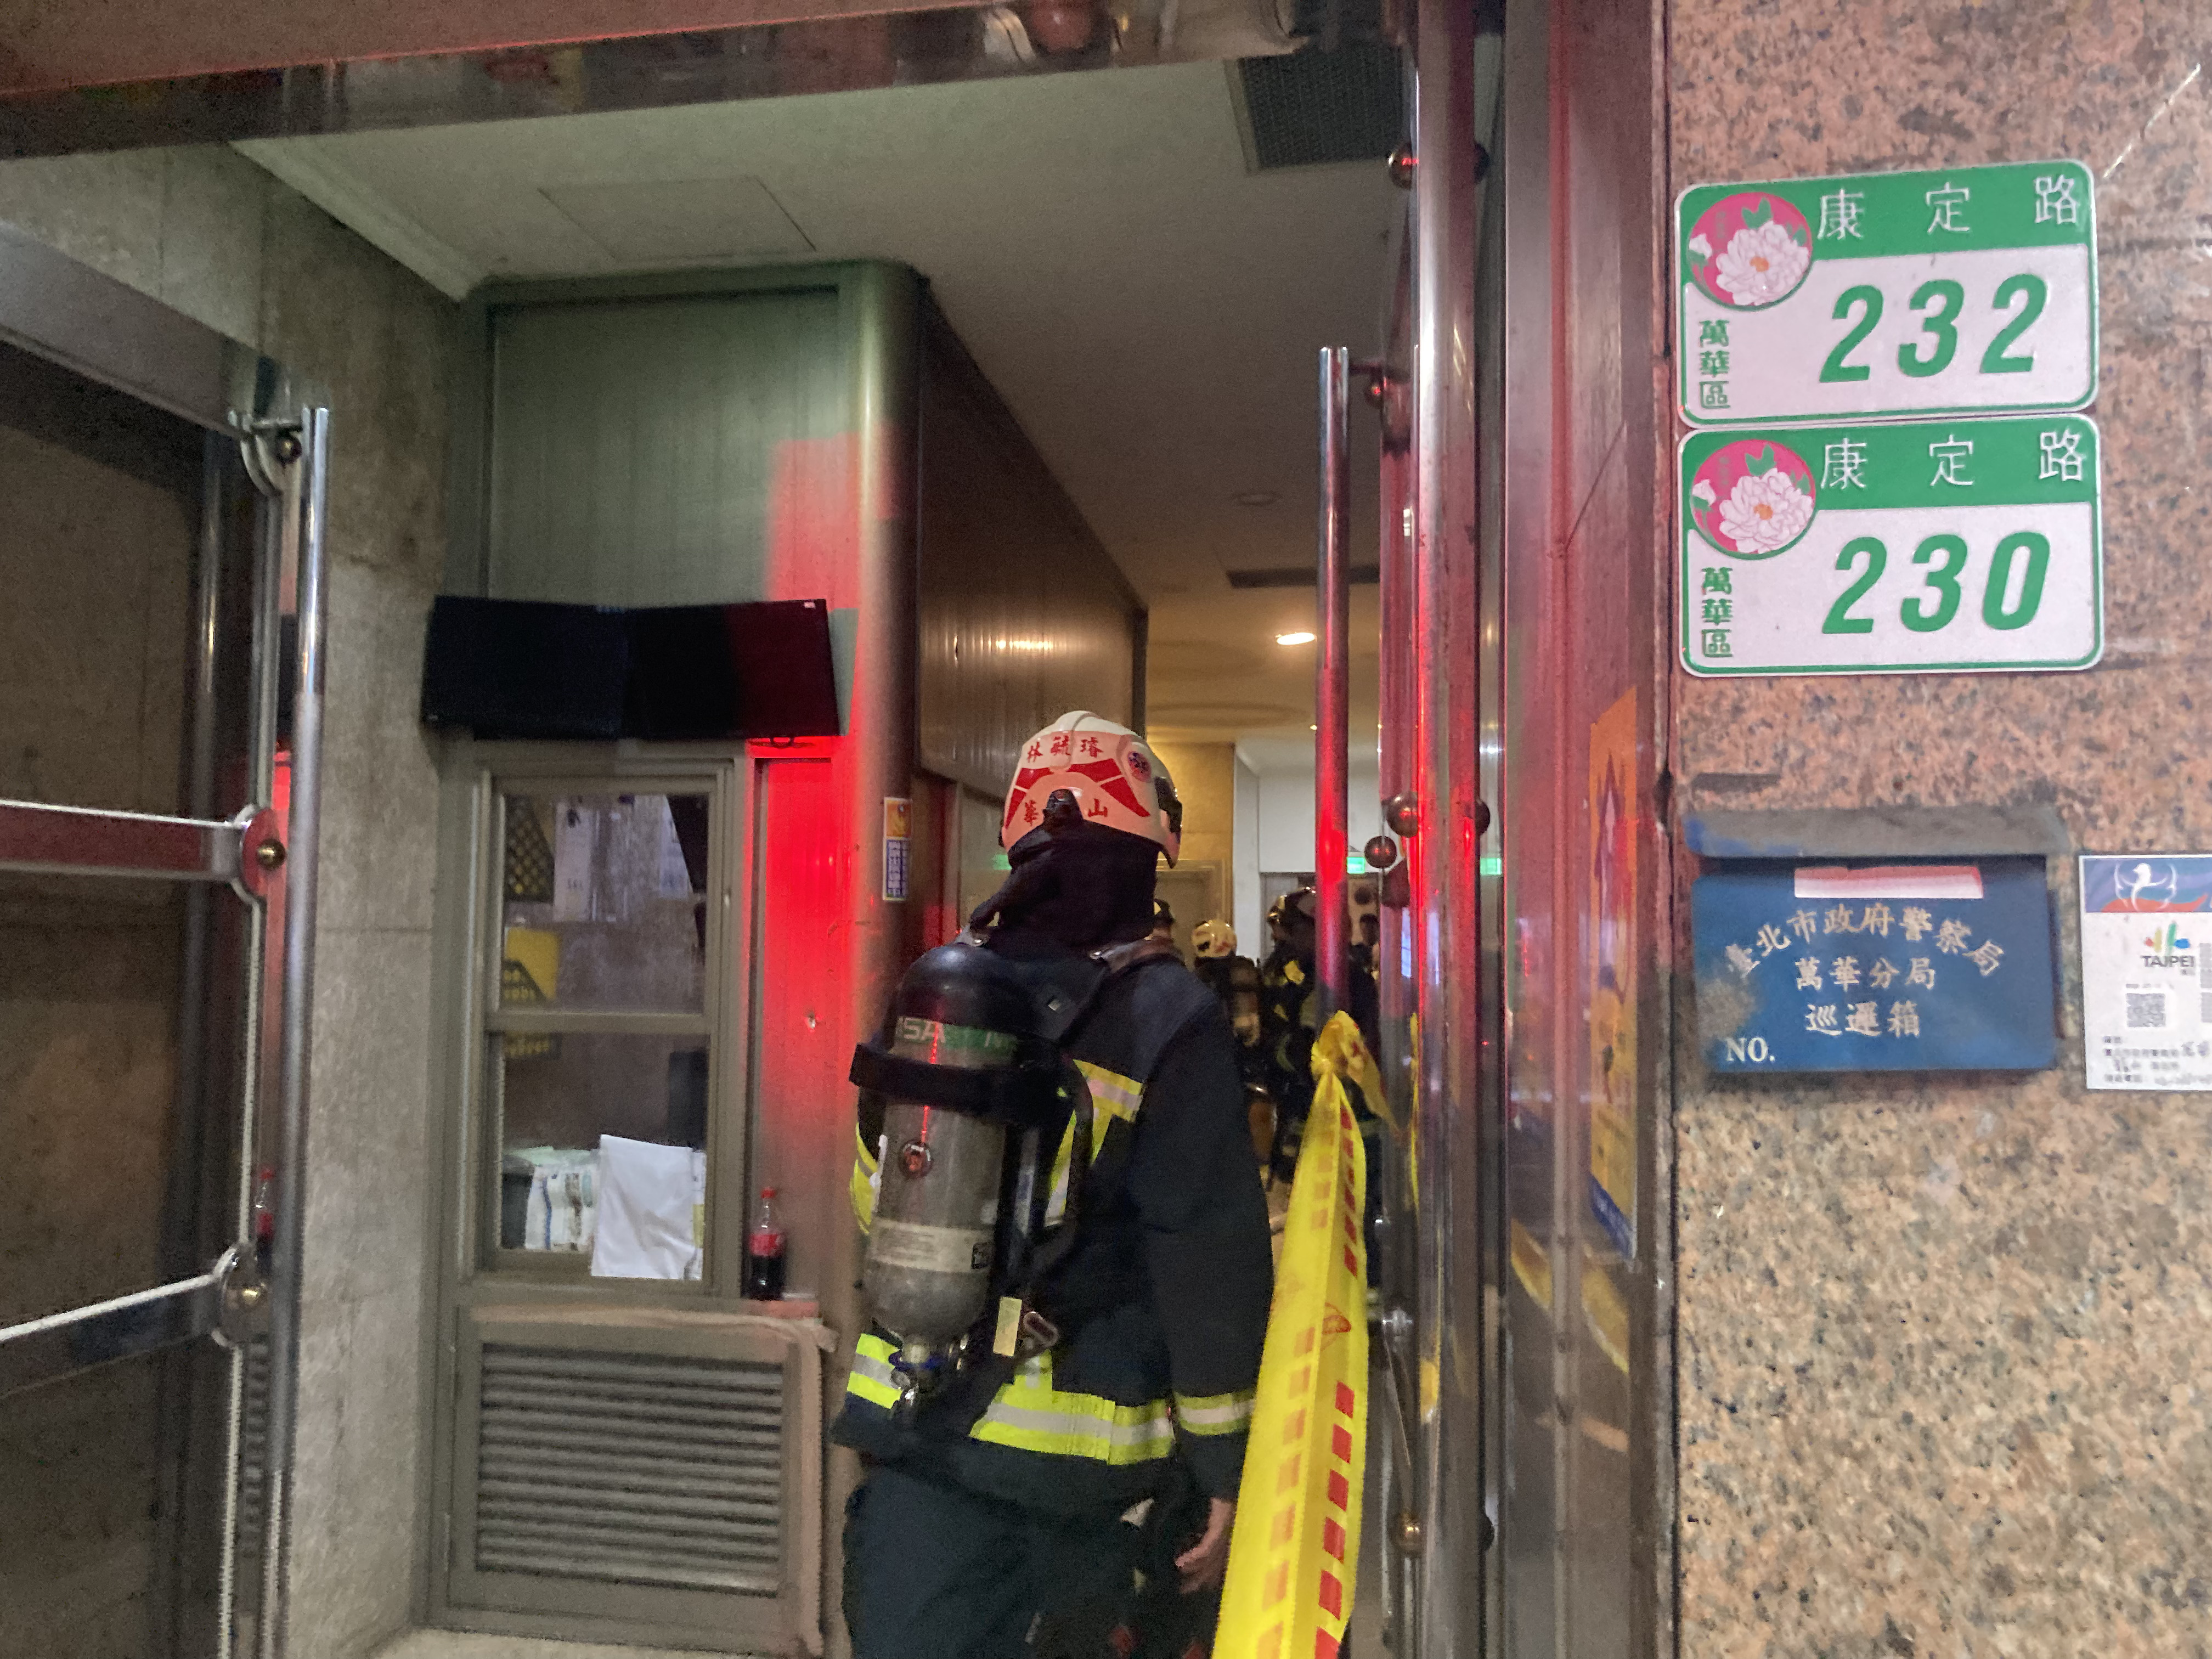 台北市万华区康定路上的钻石大楼，今天晚上发生火警，所幸无人受伤送医。记者翁至成／摄影